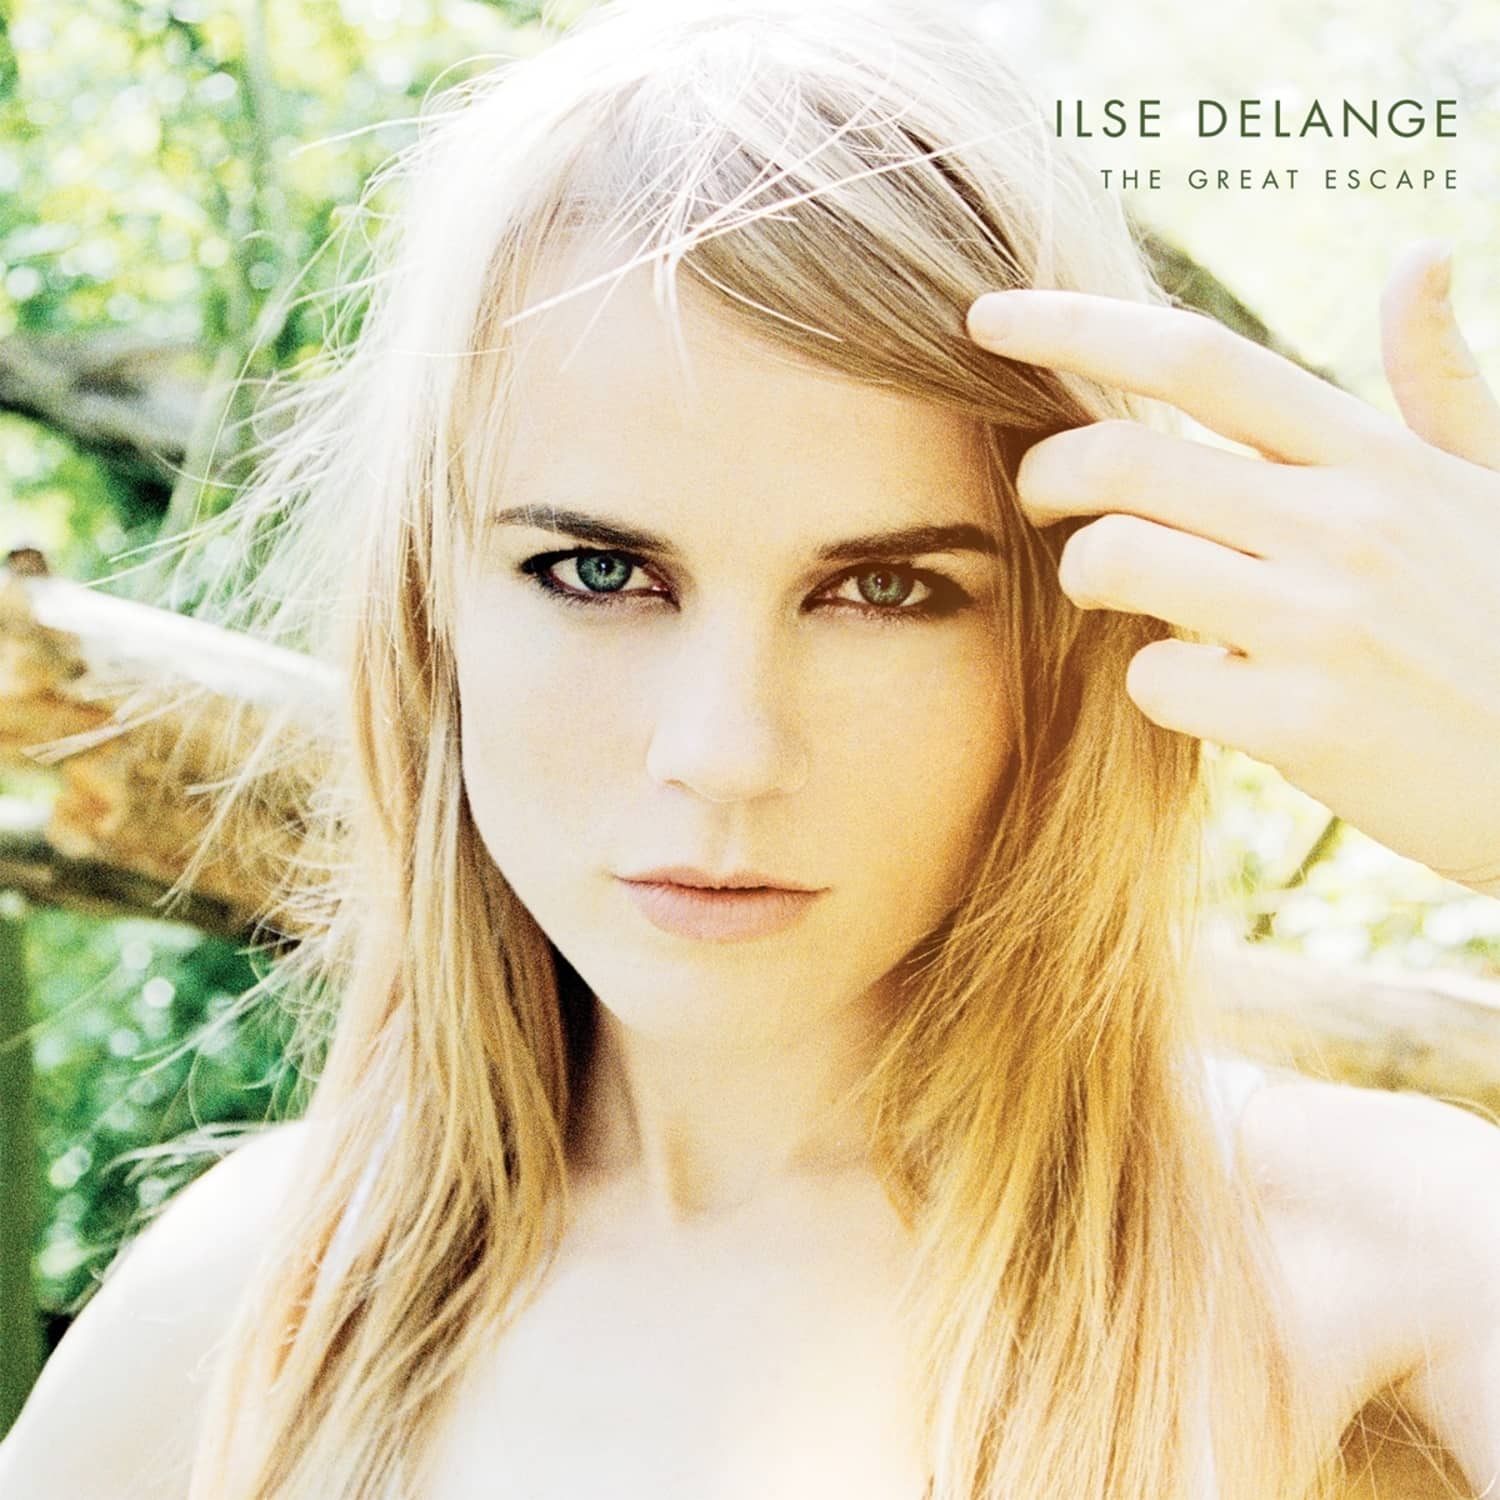  Ilse DeLange - GREAT ESCAPE 